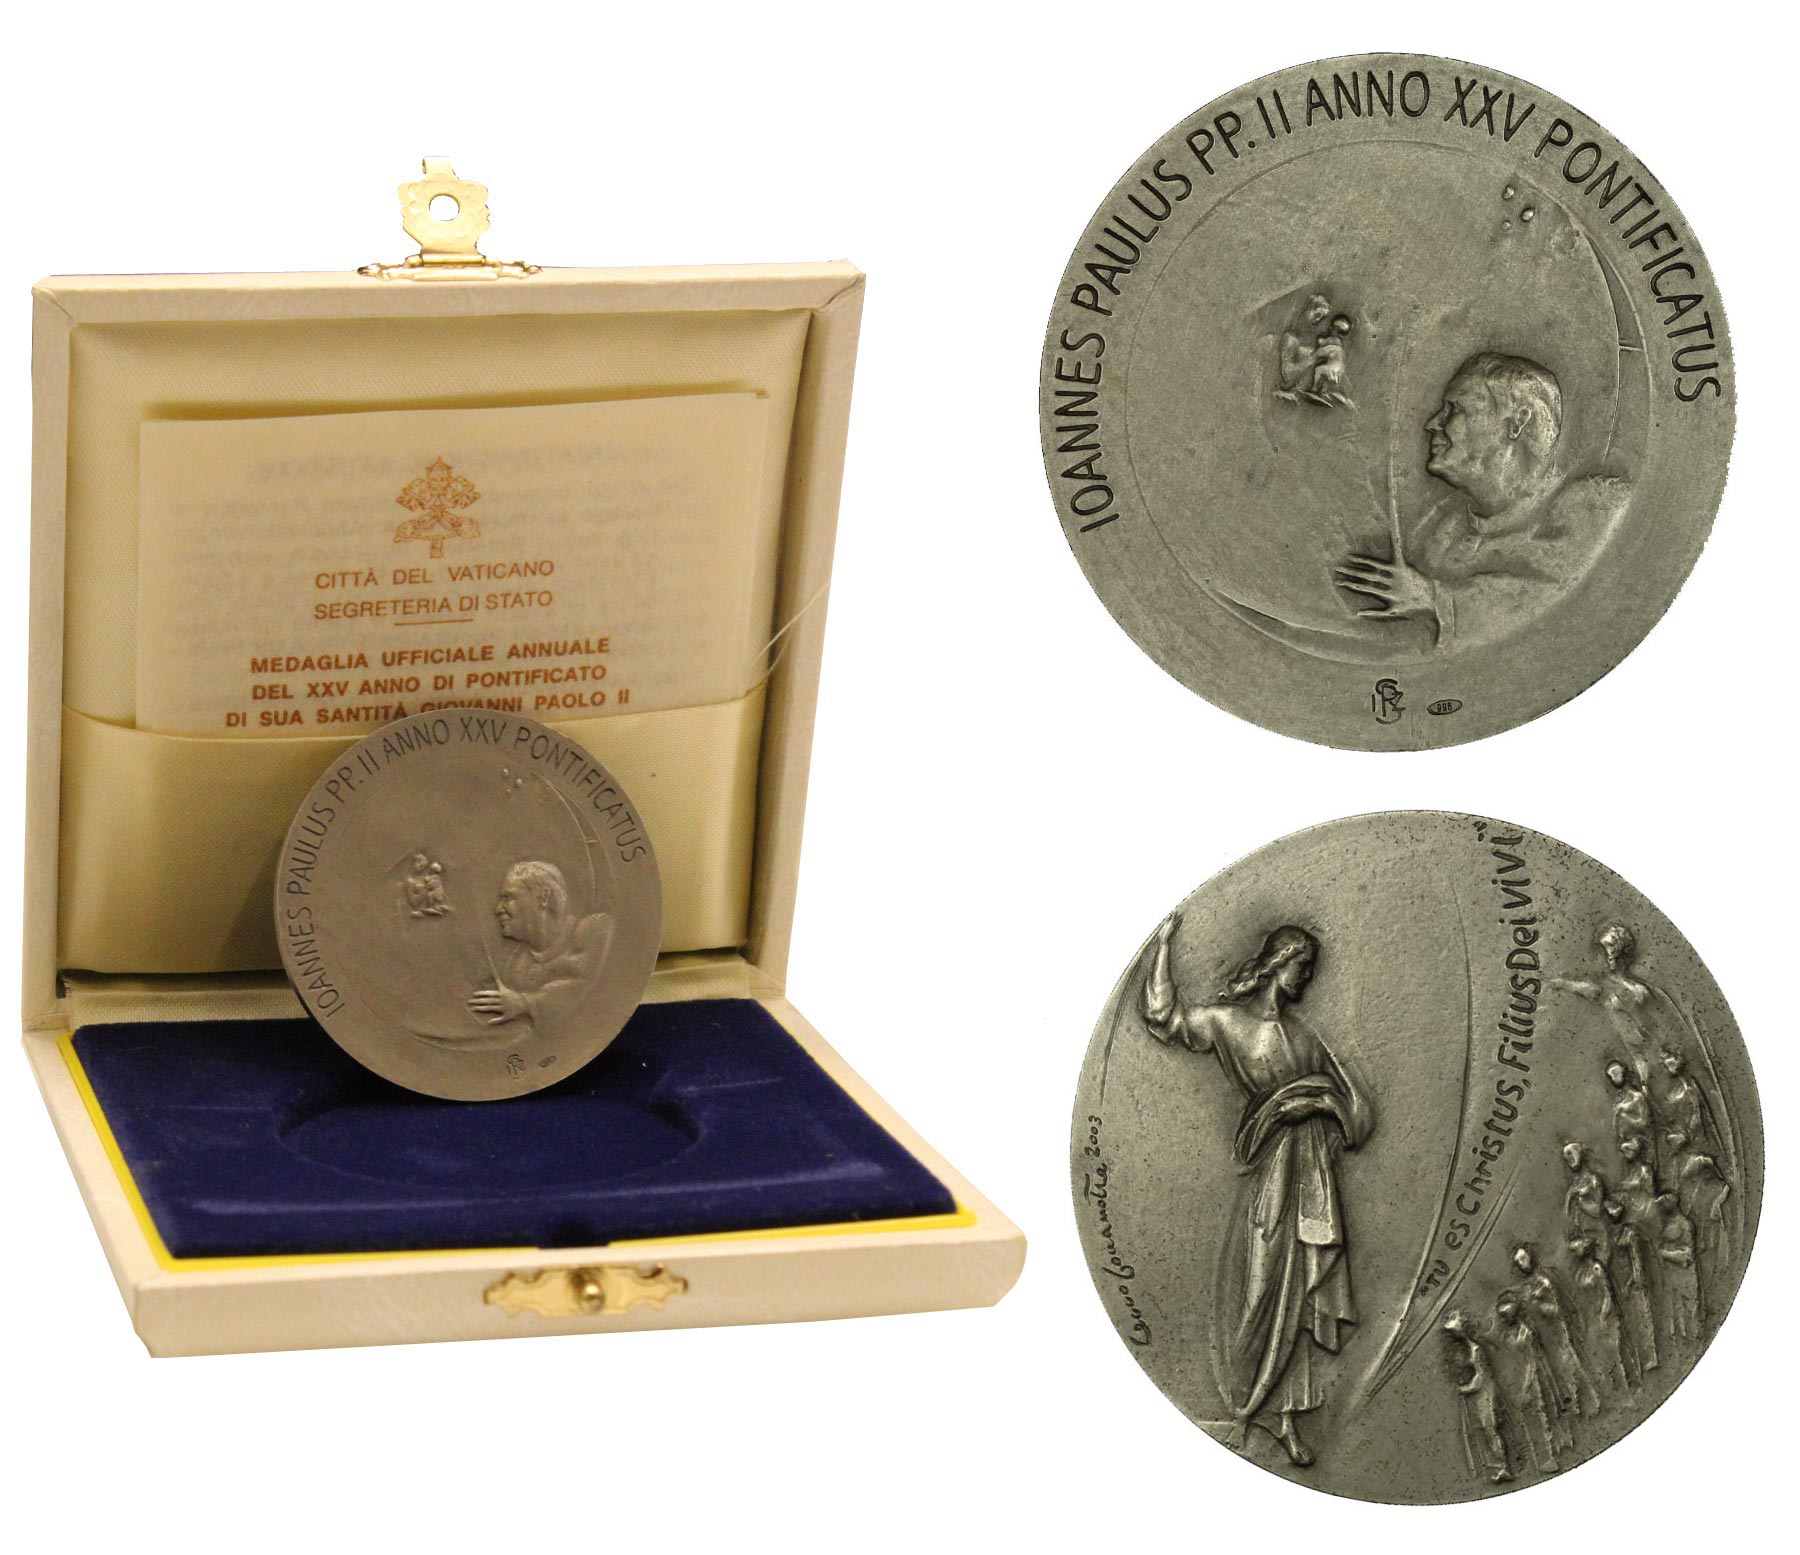 Medaglia ufficiale annuale del XXV anno di pontificato di Giovanni Paolo II